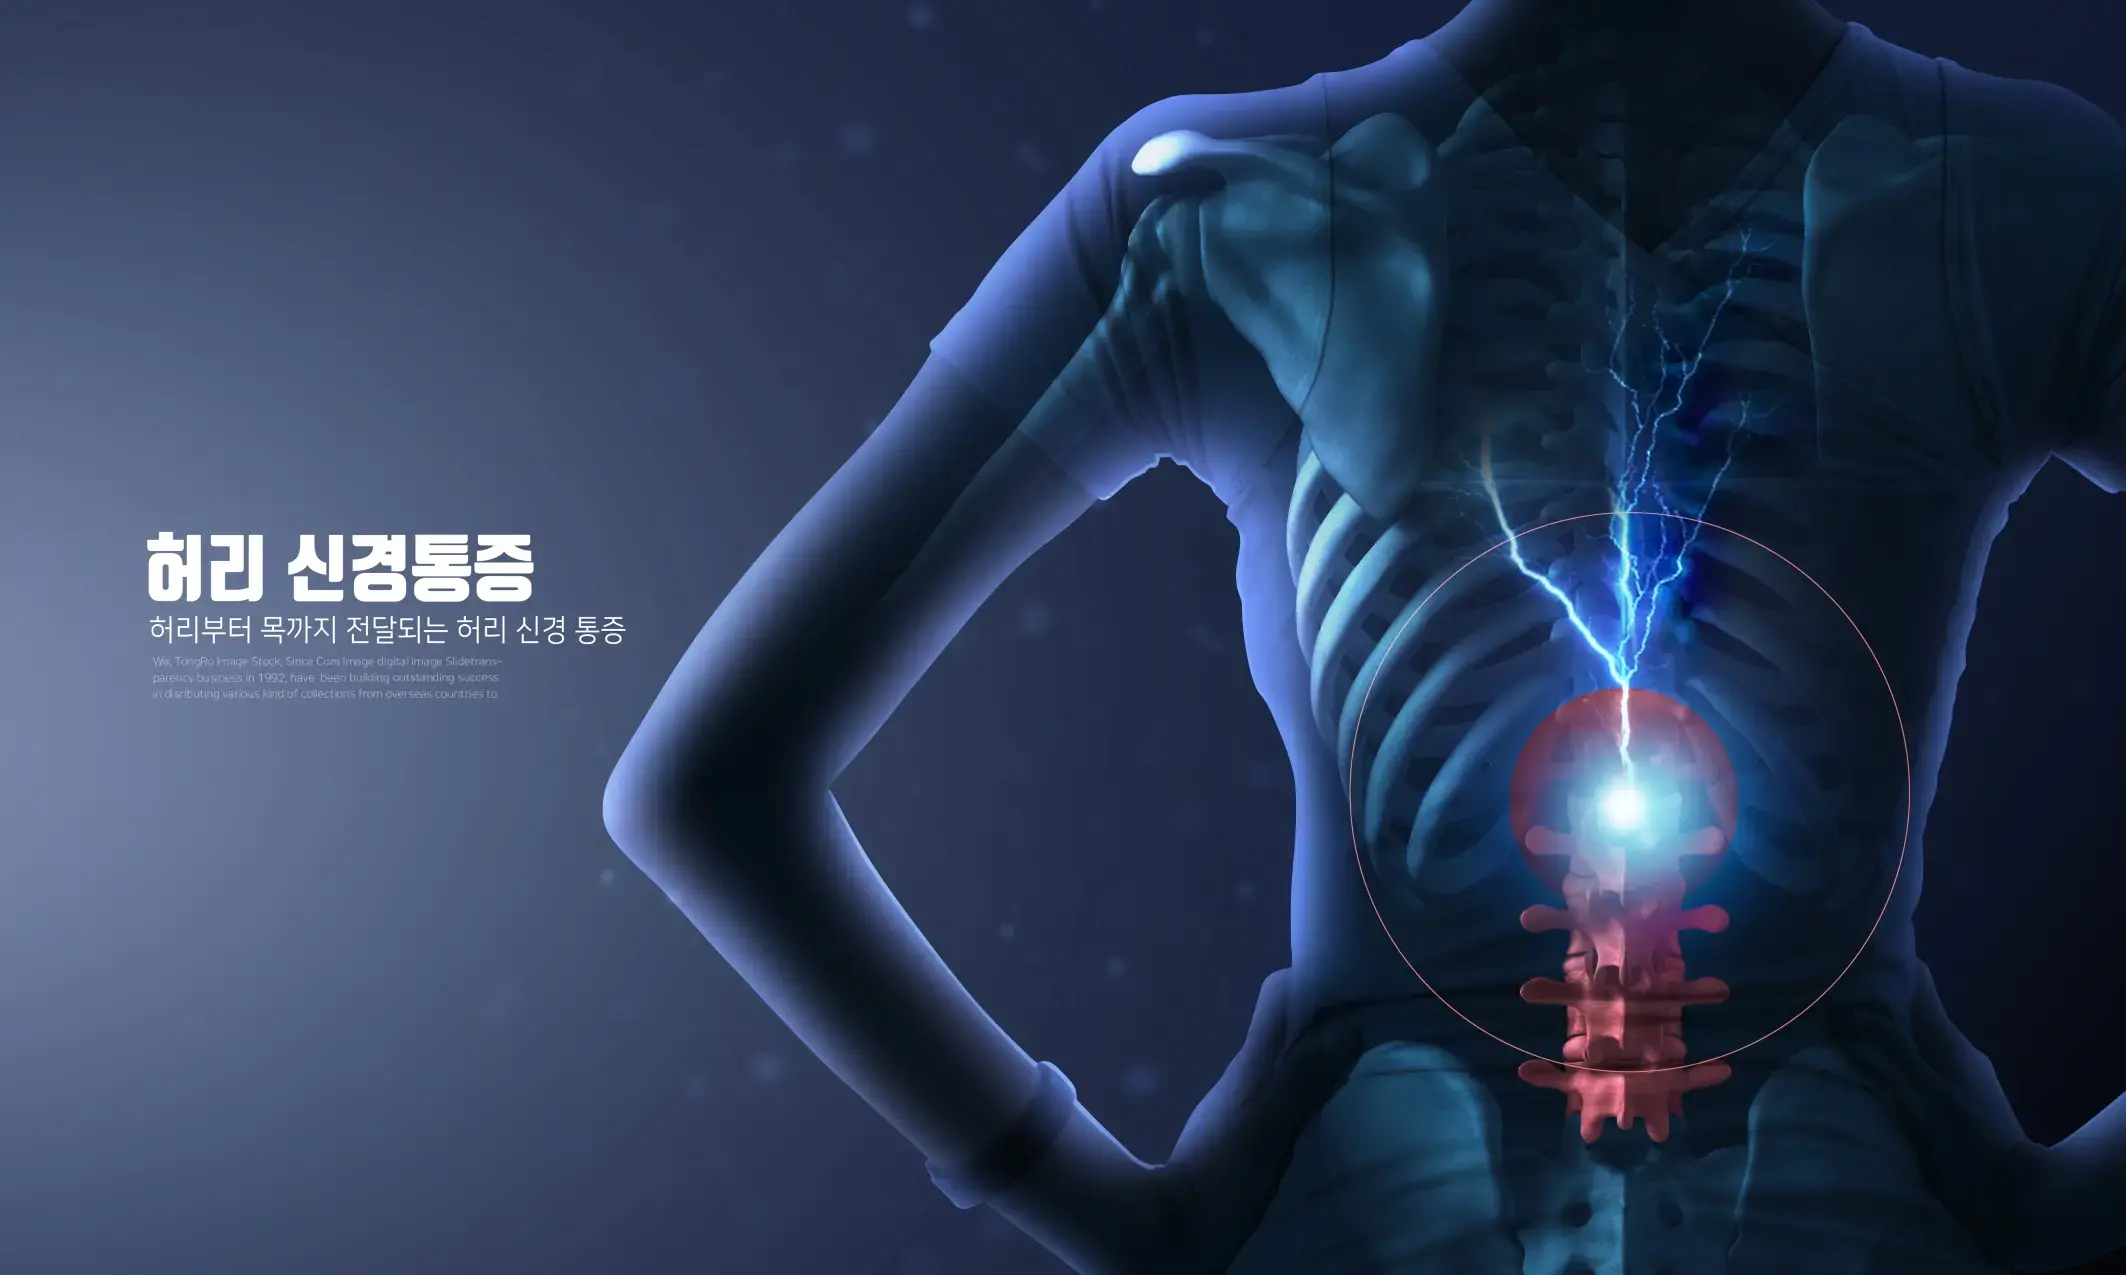 医院现代医学医疗科技骨骼关节风湿肌肉疼痛宣传海报PSD设计素材-爱设计爱分享c